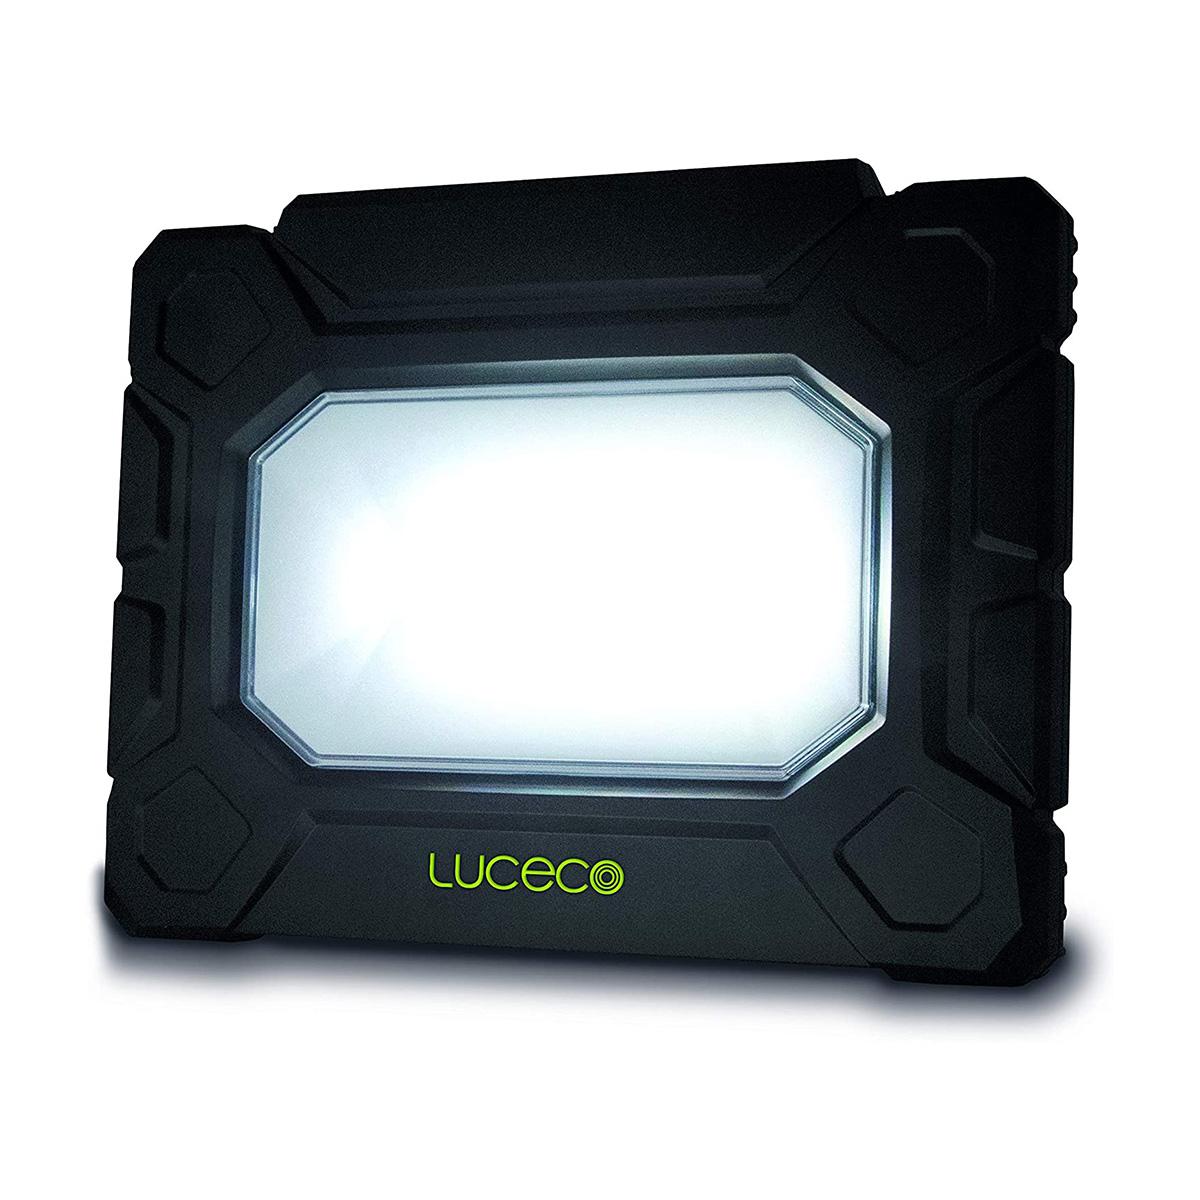 Luceco LED Arbeitsleuchte 50 Watt 5200 Lumen Arbeitslicht/Baustrahler mit Steckdosen Scheinwerfer IP54 